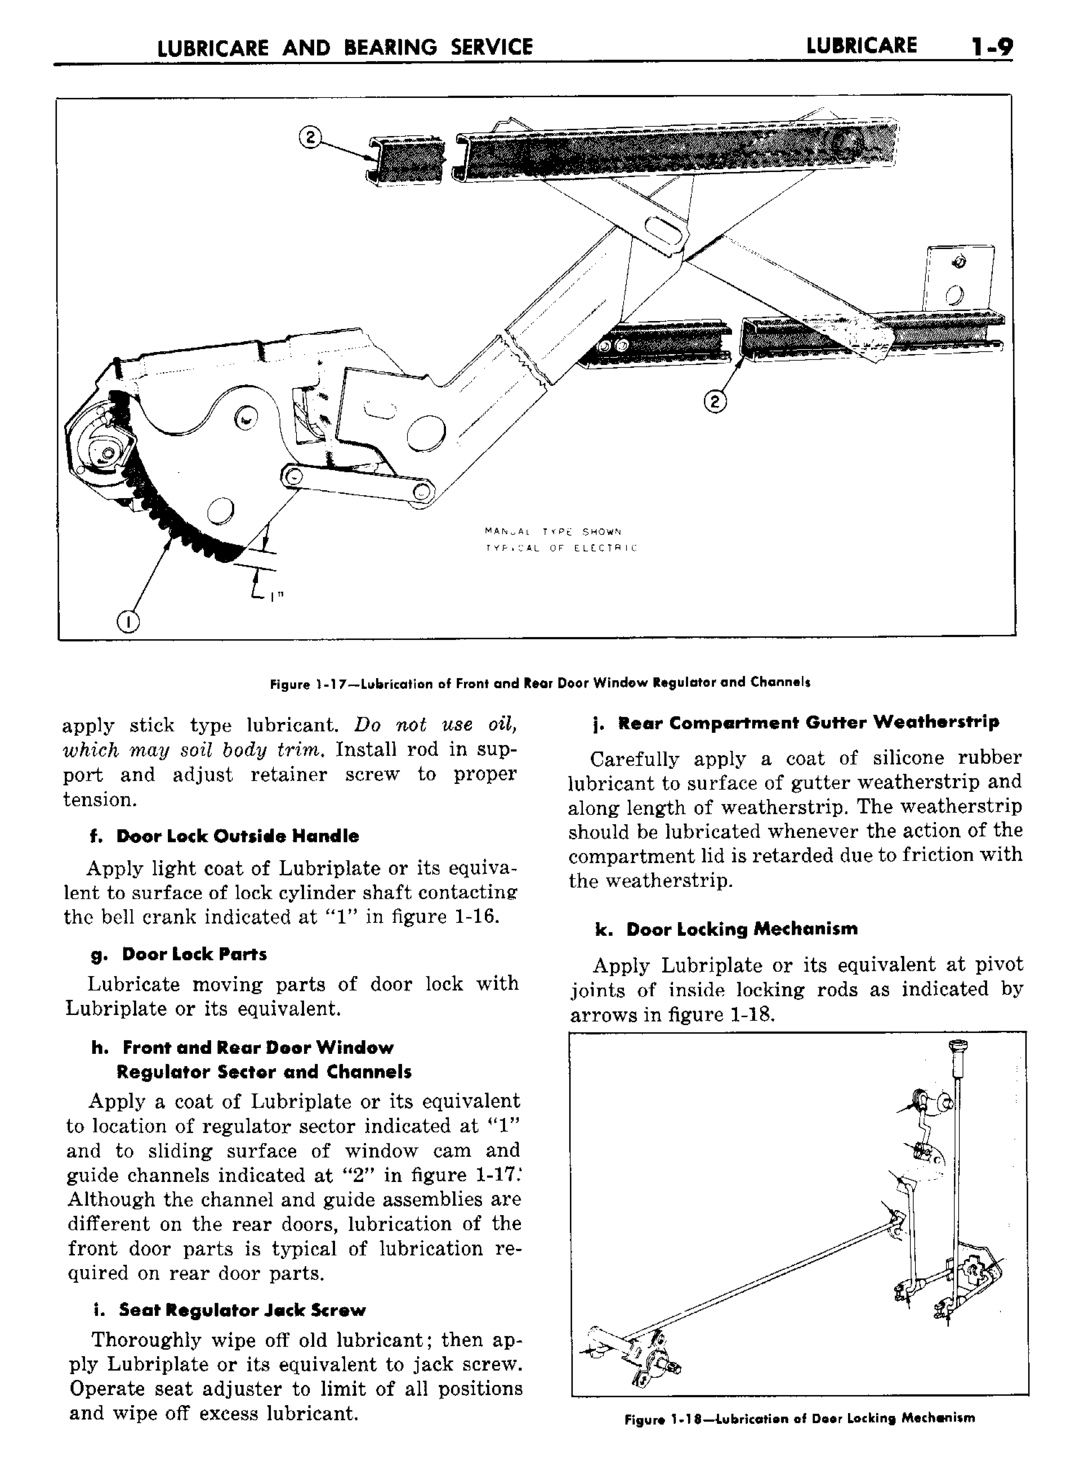 n_02 1960 Buick Shop Manual - Lubricare-009-009.jpg